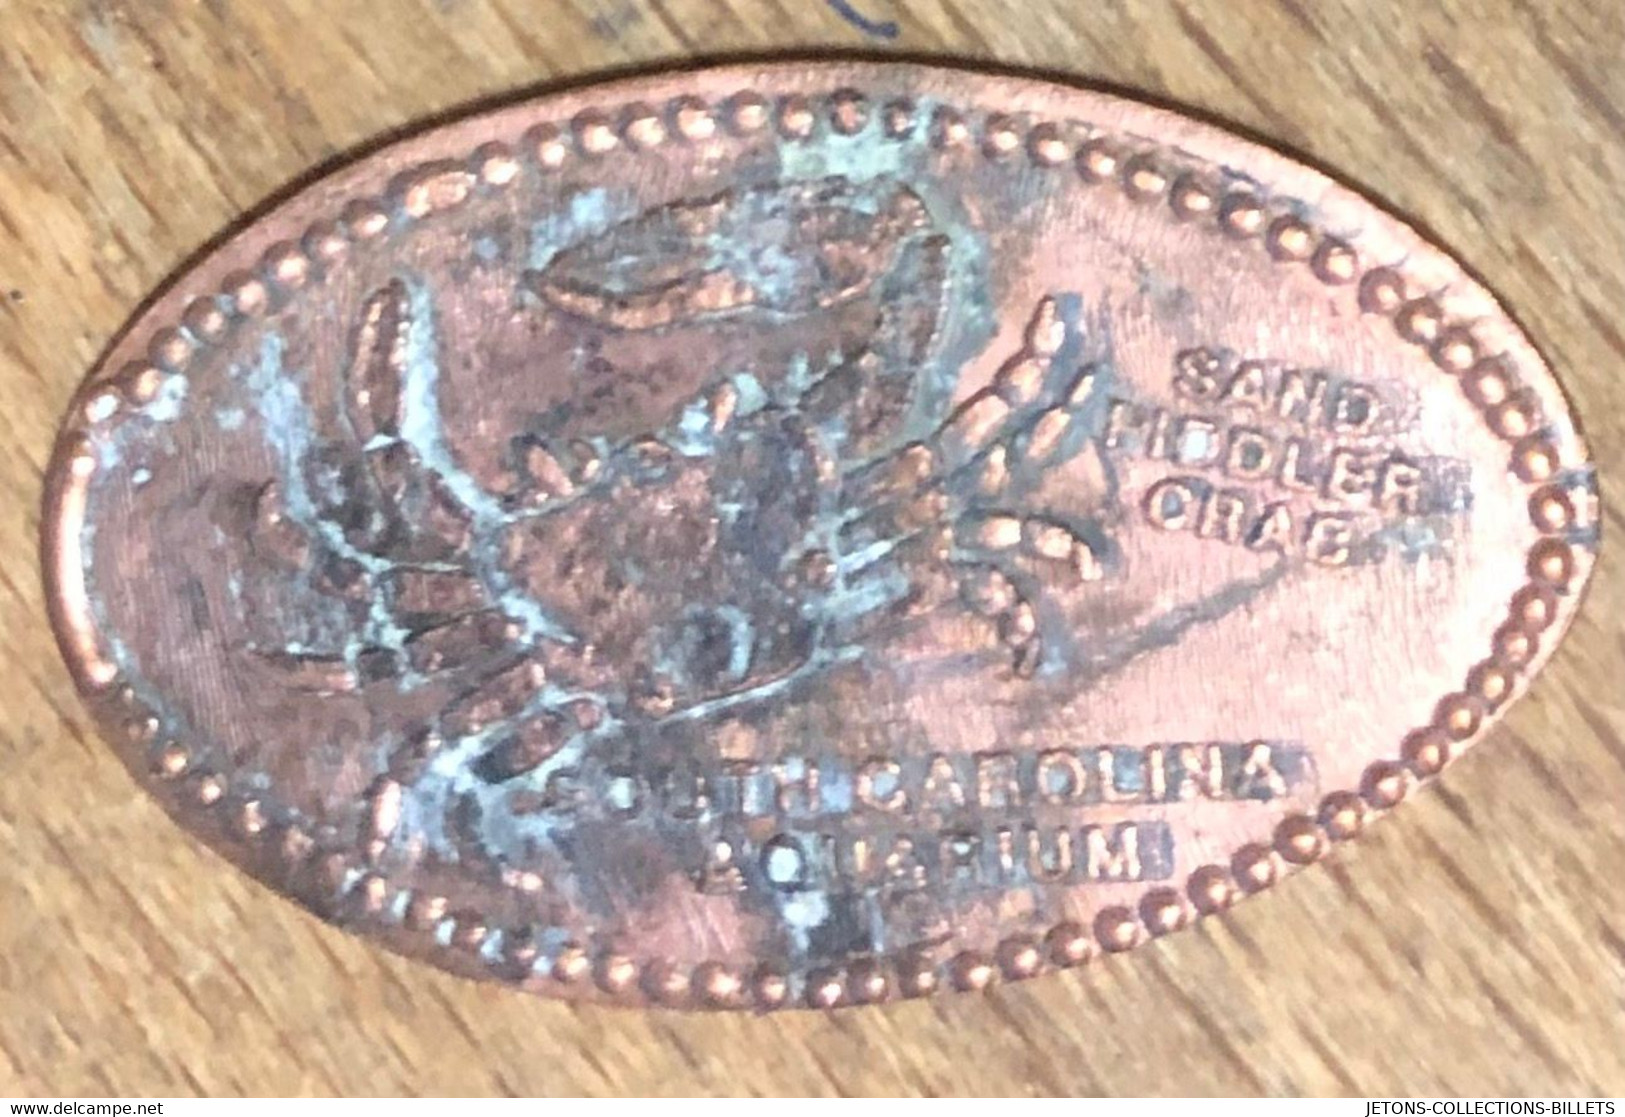 ÉTATS-UNIS USA SOUTH CAROLINA AQUARIUMS CRAS PIÈCE ÉCRASÉE PENNY ELONGATED COIN MEDAILLE TOURISTIQUE MEDALS TOKENS - Monete Allungate (penny Souvenirs)